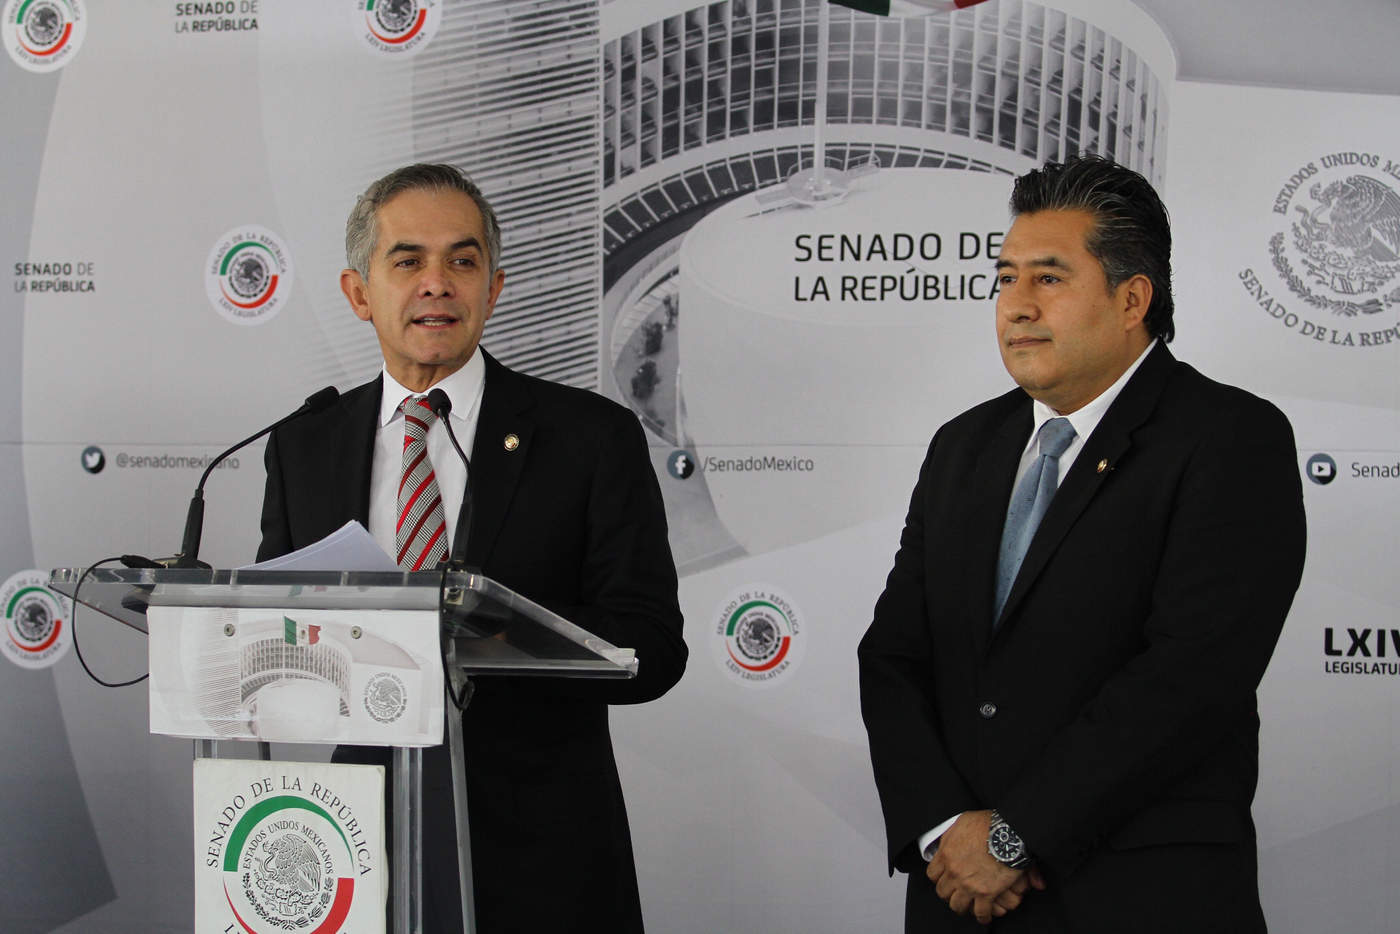 El senador Miguel Ángel Mancera Espinosa (PRD), ex jefe de Gobierno de la Ciudad de México, afirmó que 'no hay delitos desaparecidos', en su gestión. (ARCHIVO)